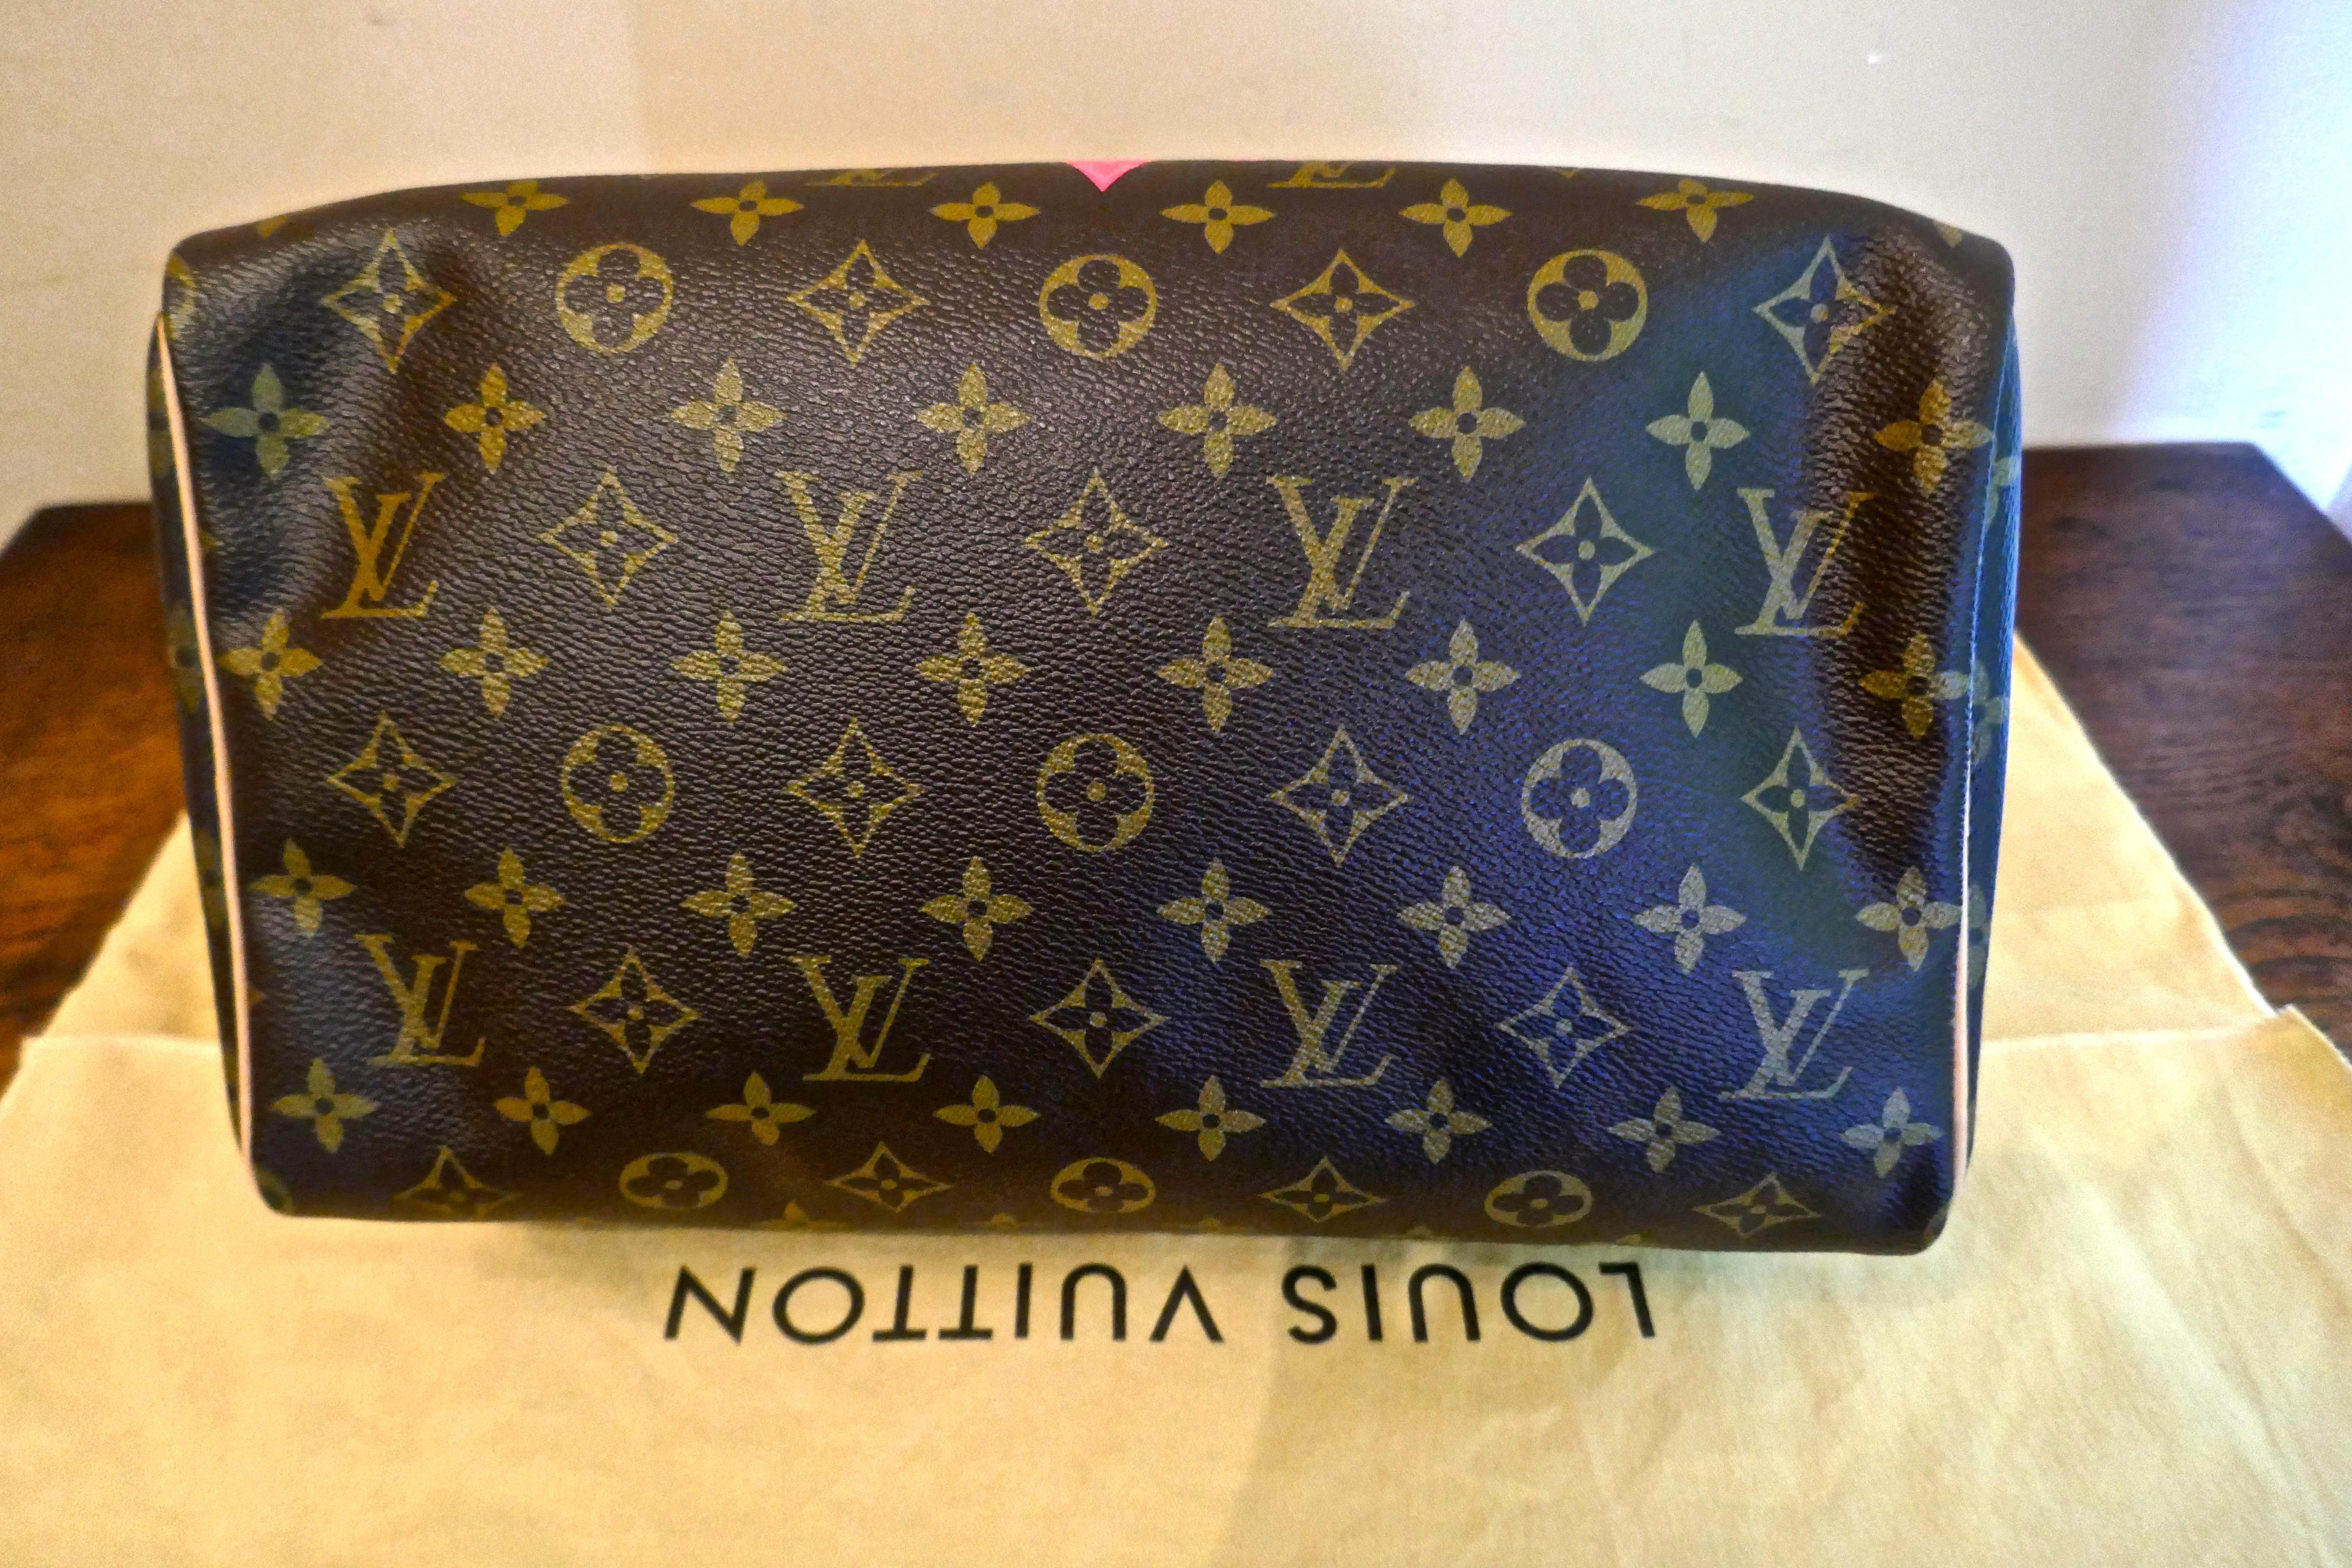 Louis Vuitton Speedy 30 Limited Edition Grenade V Monogram Handbag. 2